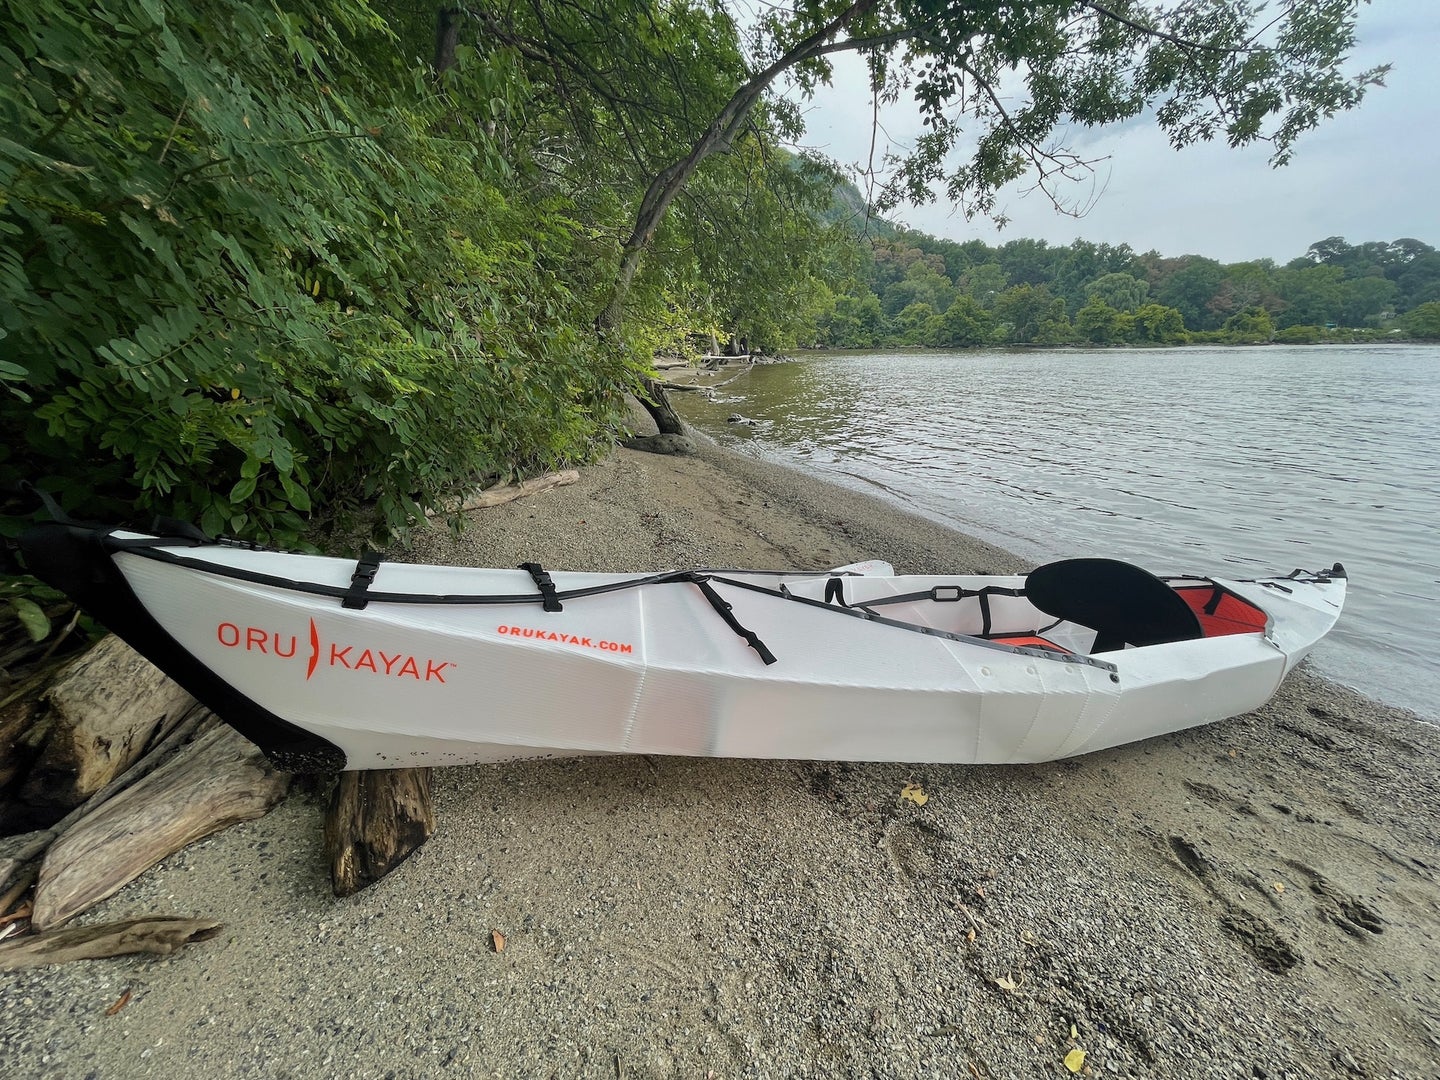 a kayak on a beach